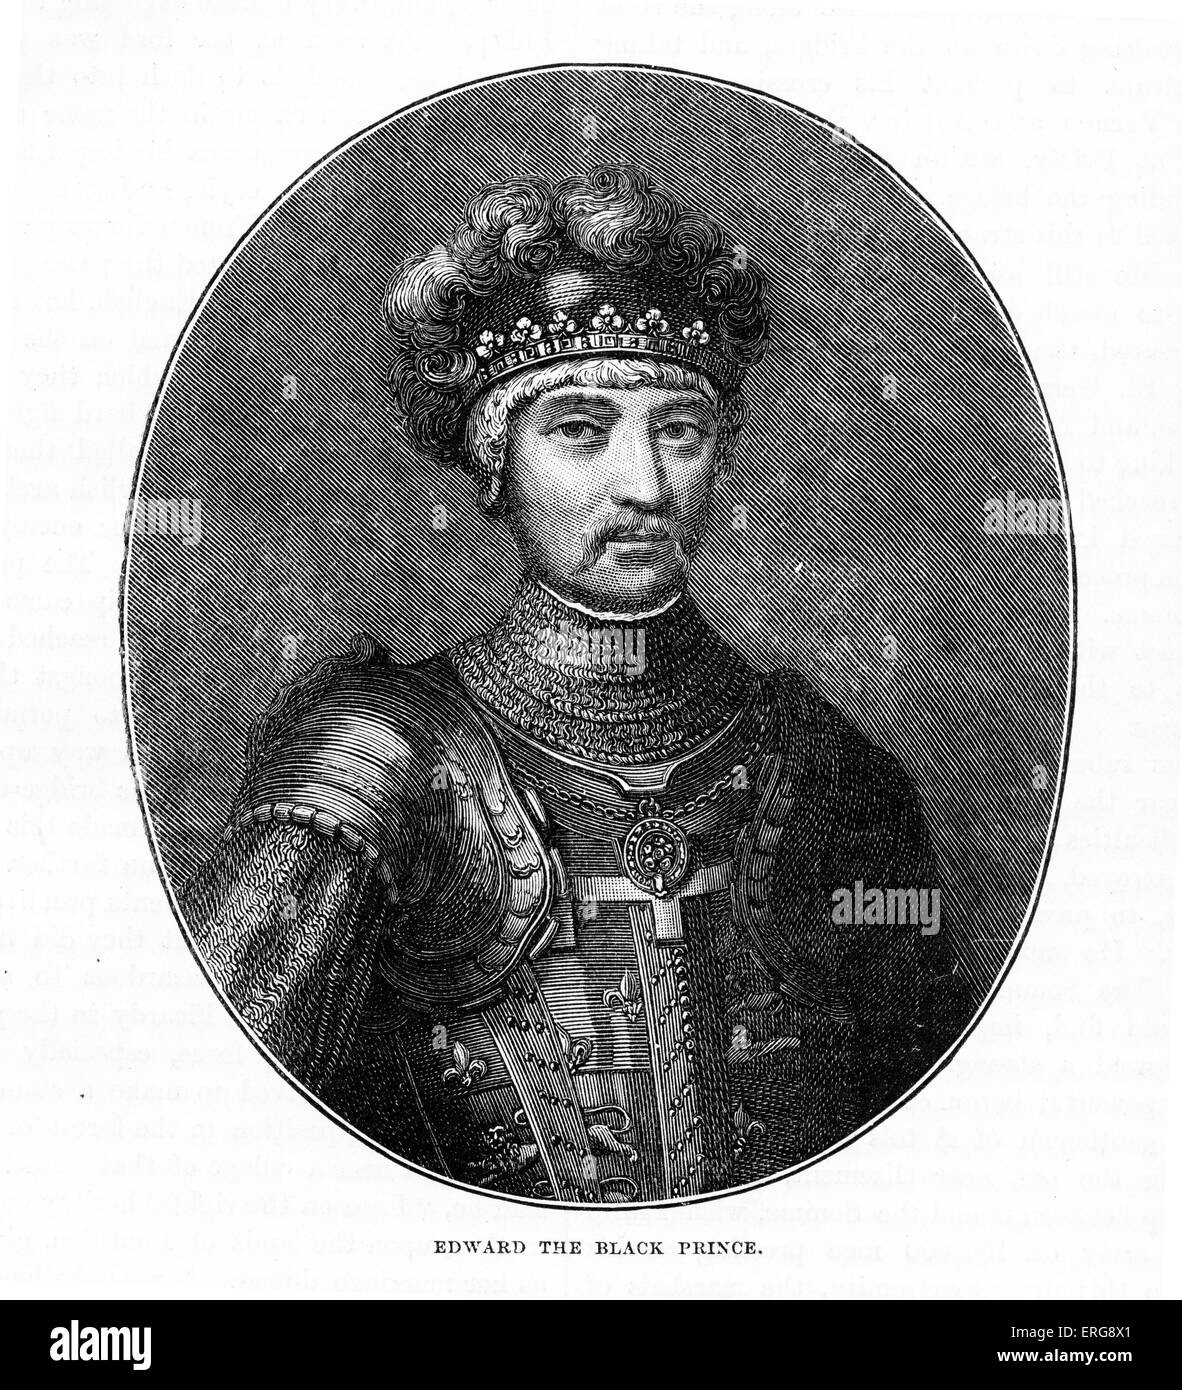 Edward, il Principe Nero. Il figlio maggiore di Edward III d'Inghilterra. Come un capo militare, le sue vittorie sui francesi a Crécy e Foto Stock